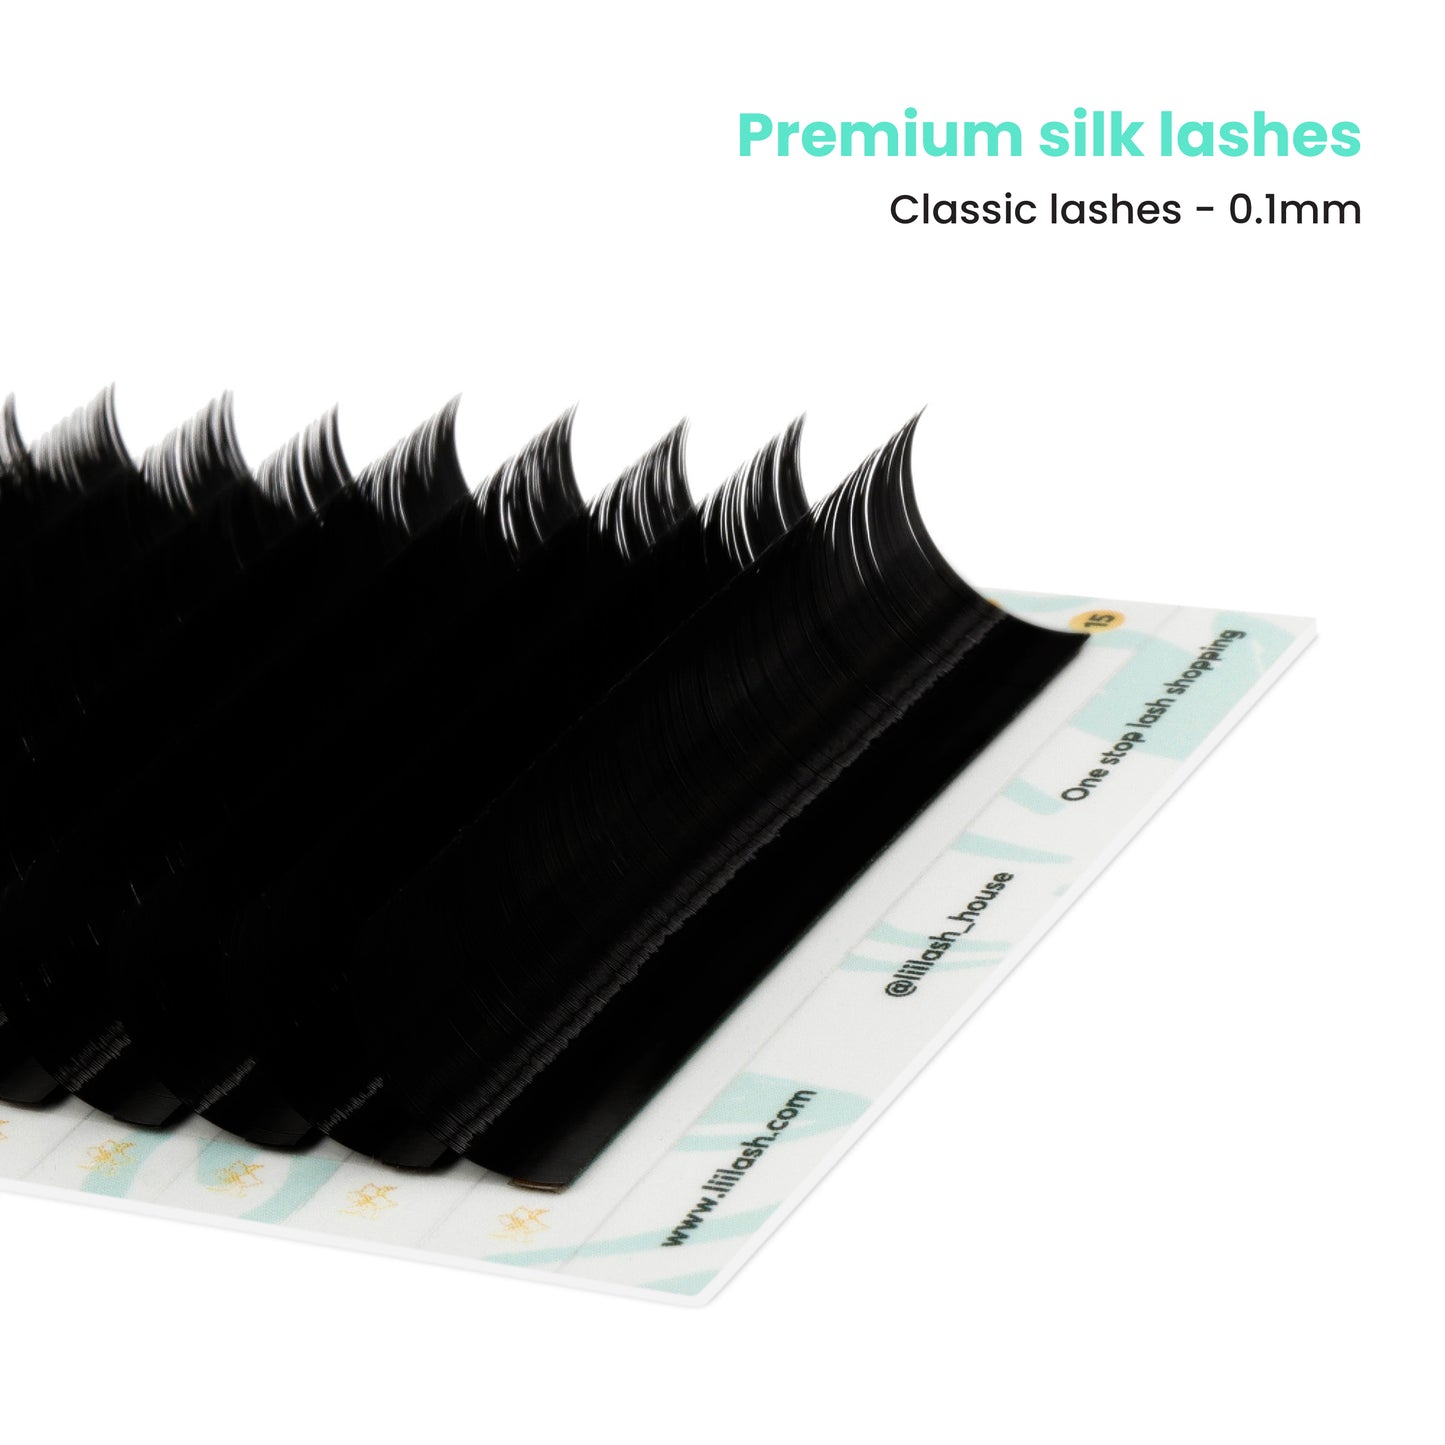 Premium Silk classic lashes 0.1mm